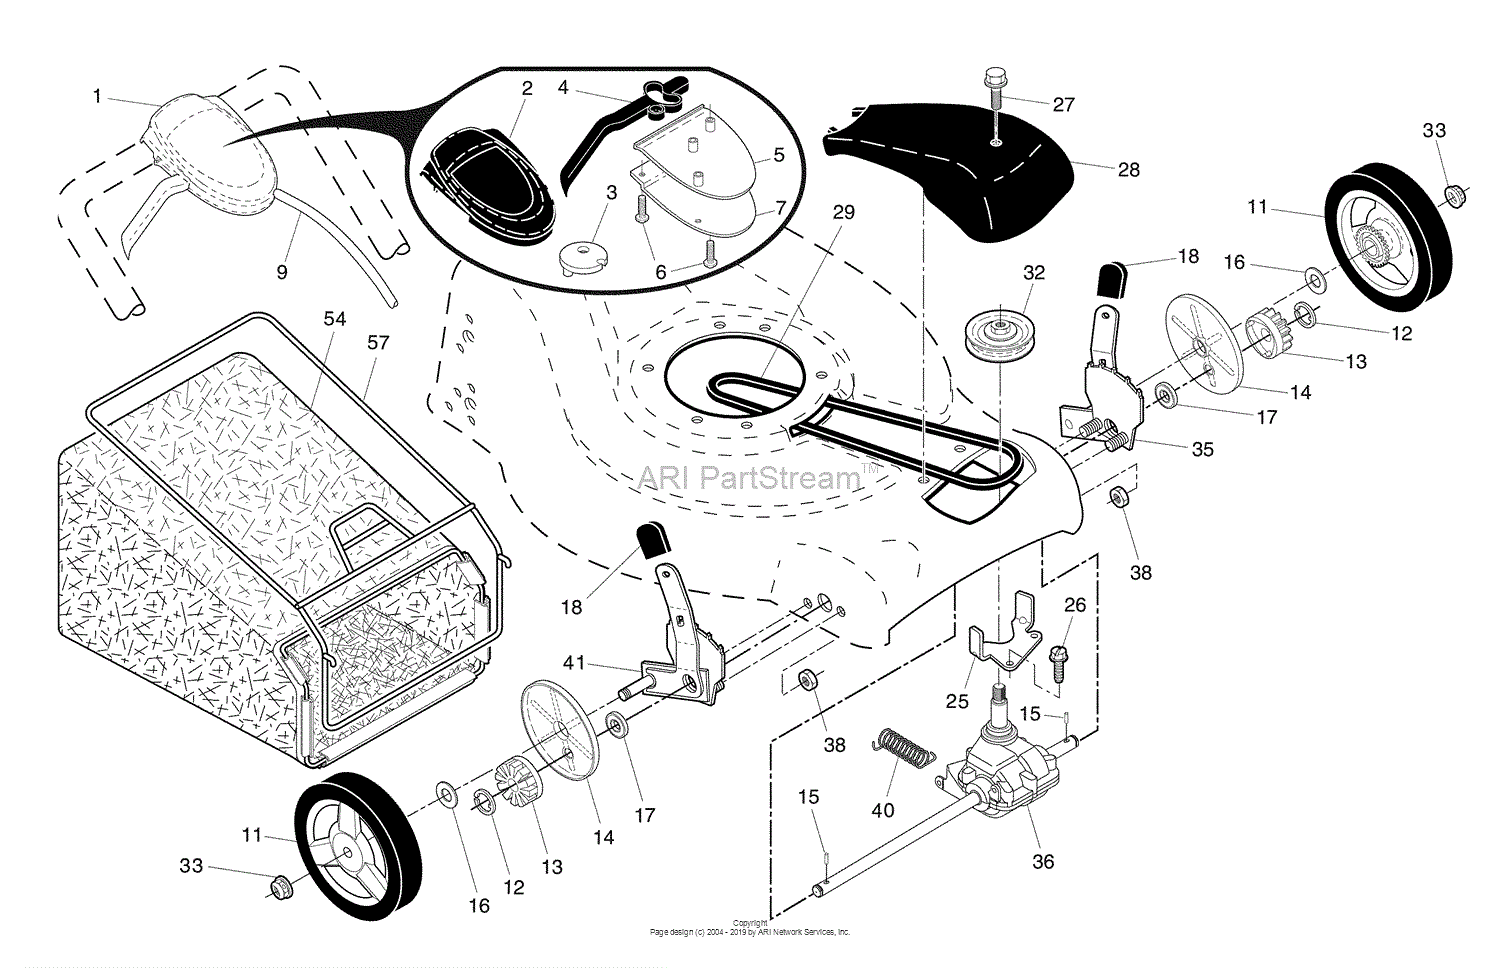 38 Husqvarna 7021p Carburetor Diagram Diagram For You